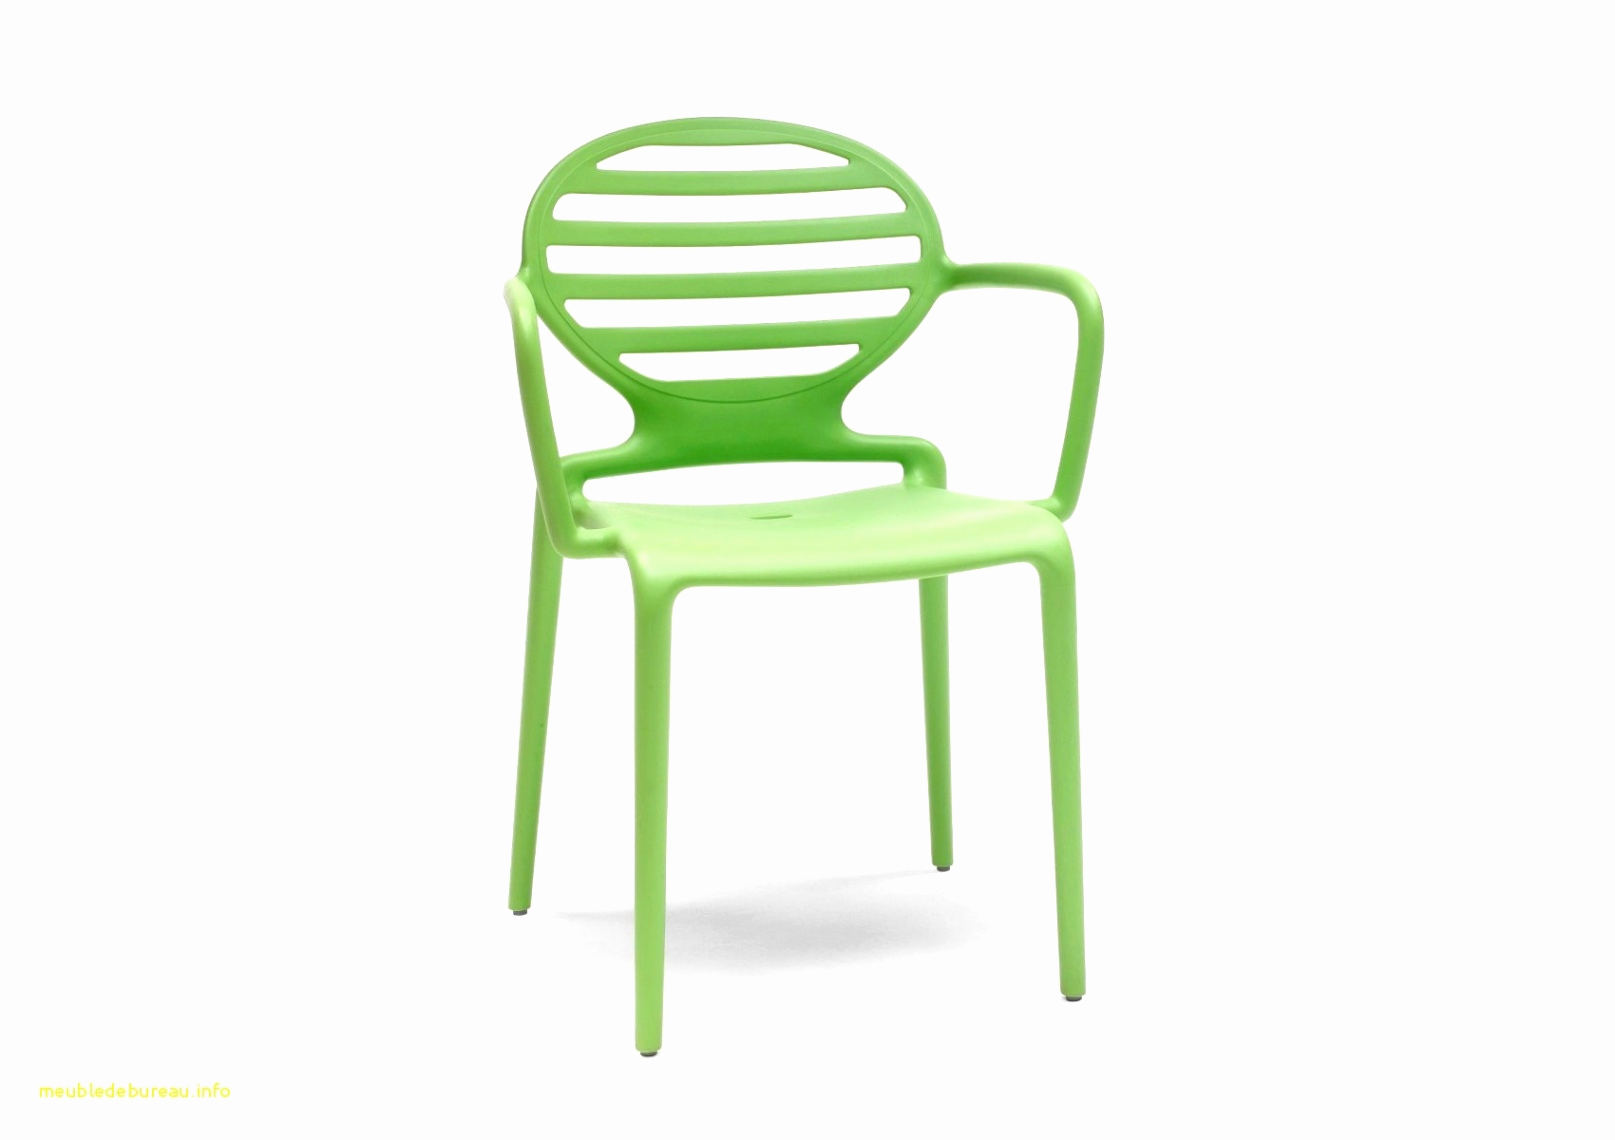 table de jardin grise best of chaise de salon pas cher beau chaise design cuir chaise de table de jardin grise